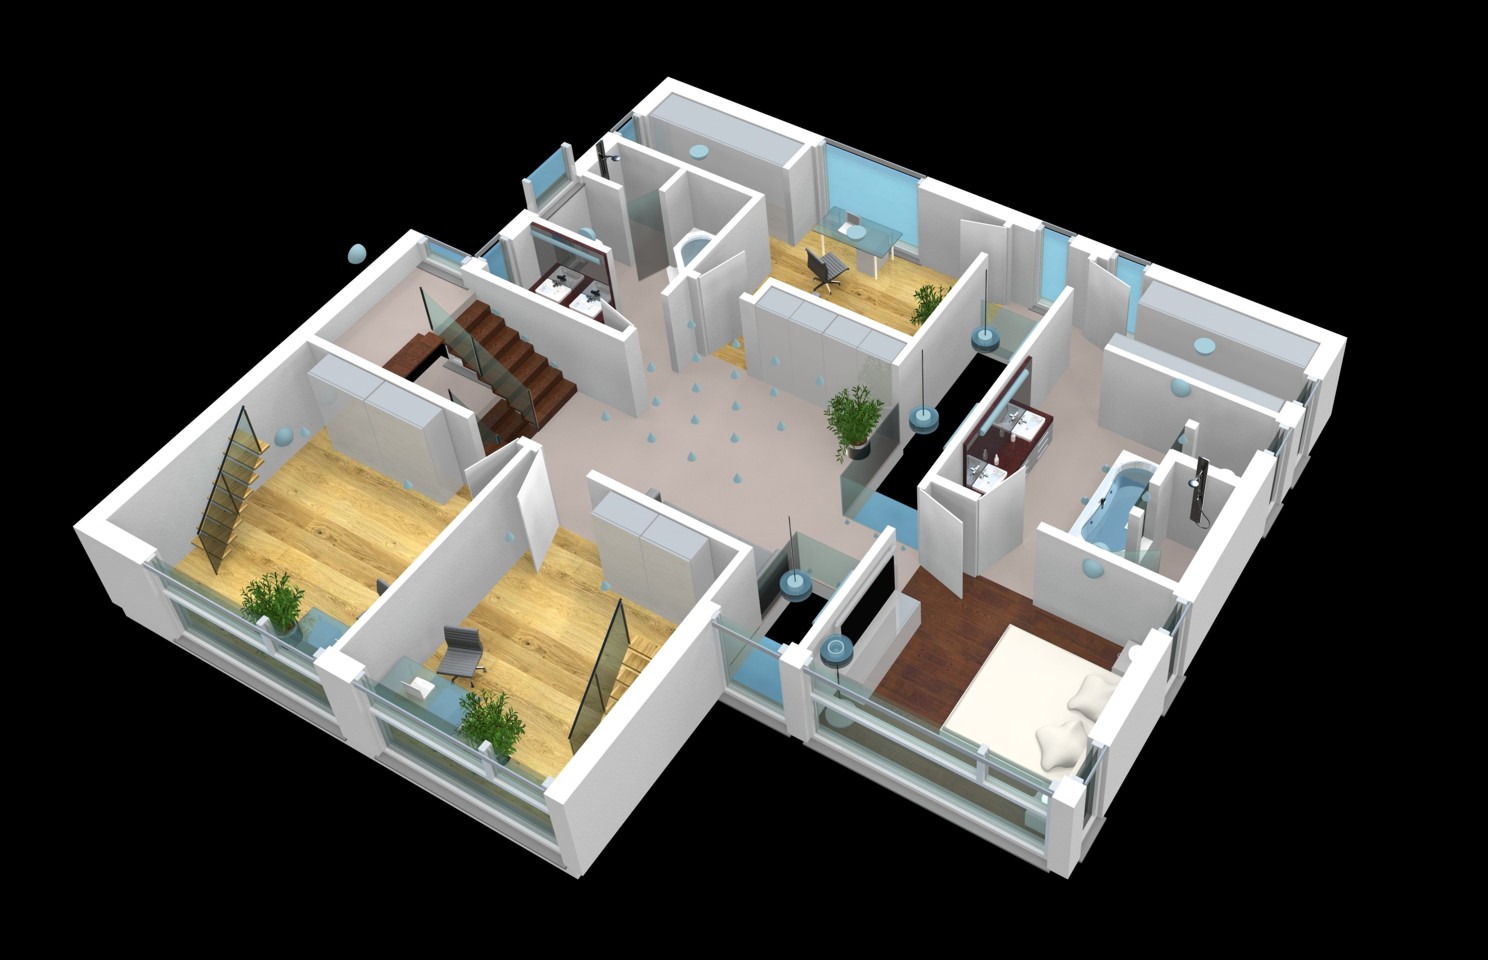 Architekturvisualisierung 3D-Grundriss des 2 Obergeschosses eine Einfamilienhauses für interaktive Touch-Displays mit interaktiven Licht-, Jalousien-Steuerung eines e-houses für iTrain GmbH, Switzerland (Jahr 2009)